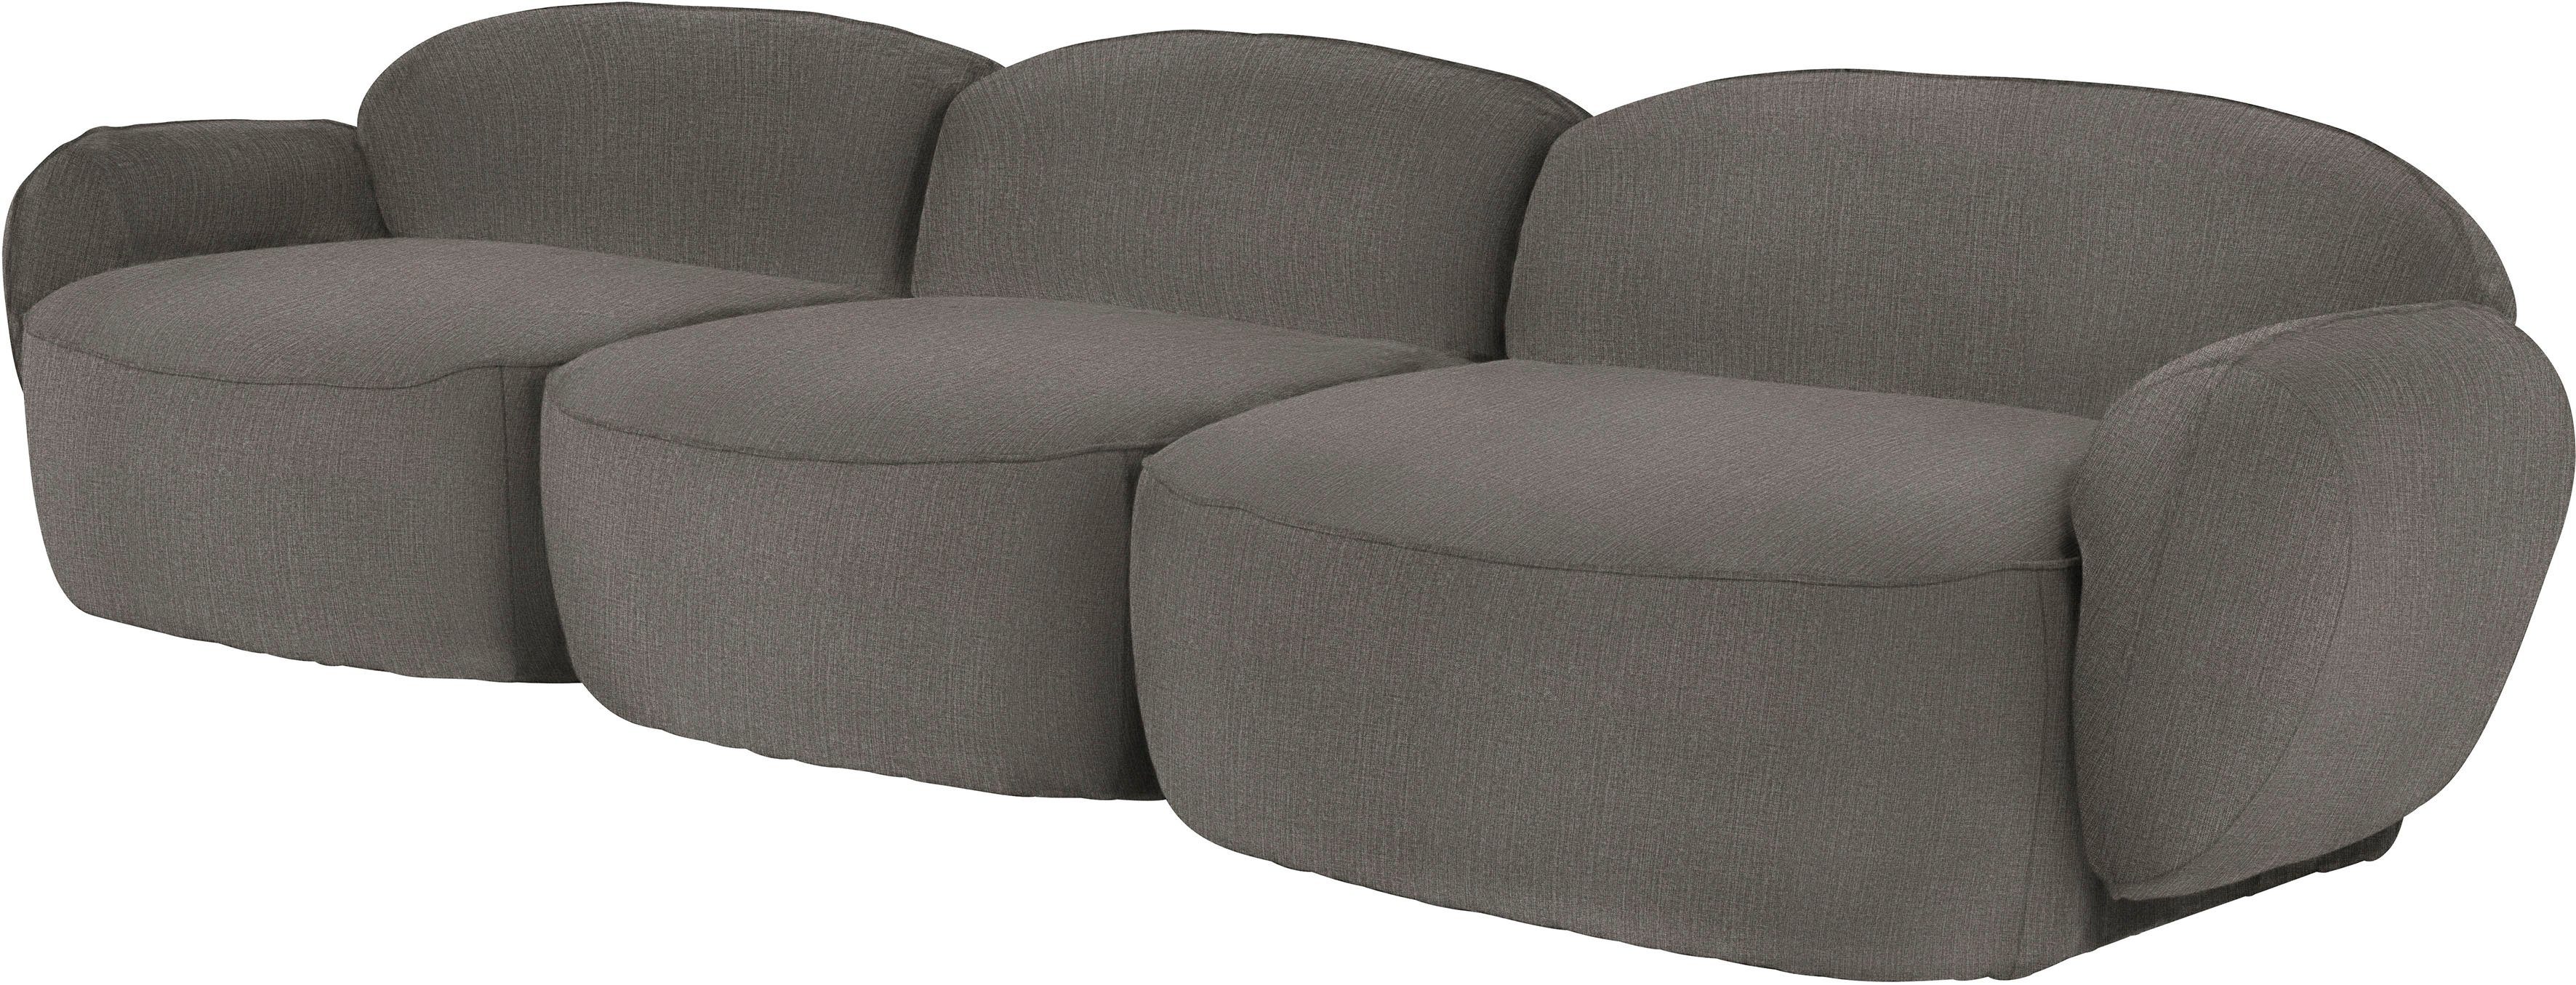 3,5-Sitzer durch komfortabel im Bubble, Memoryschaum, furninova skandinavischen Design